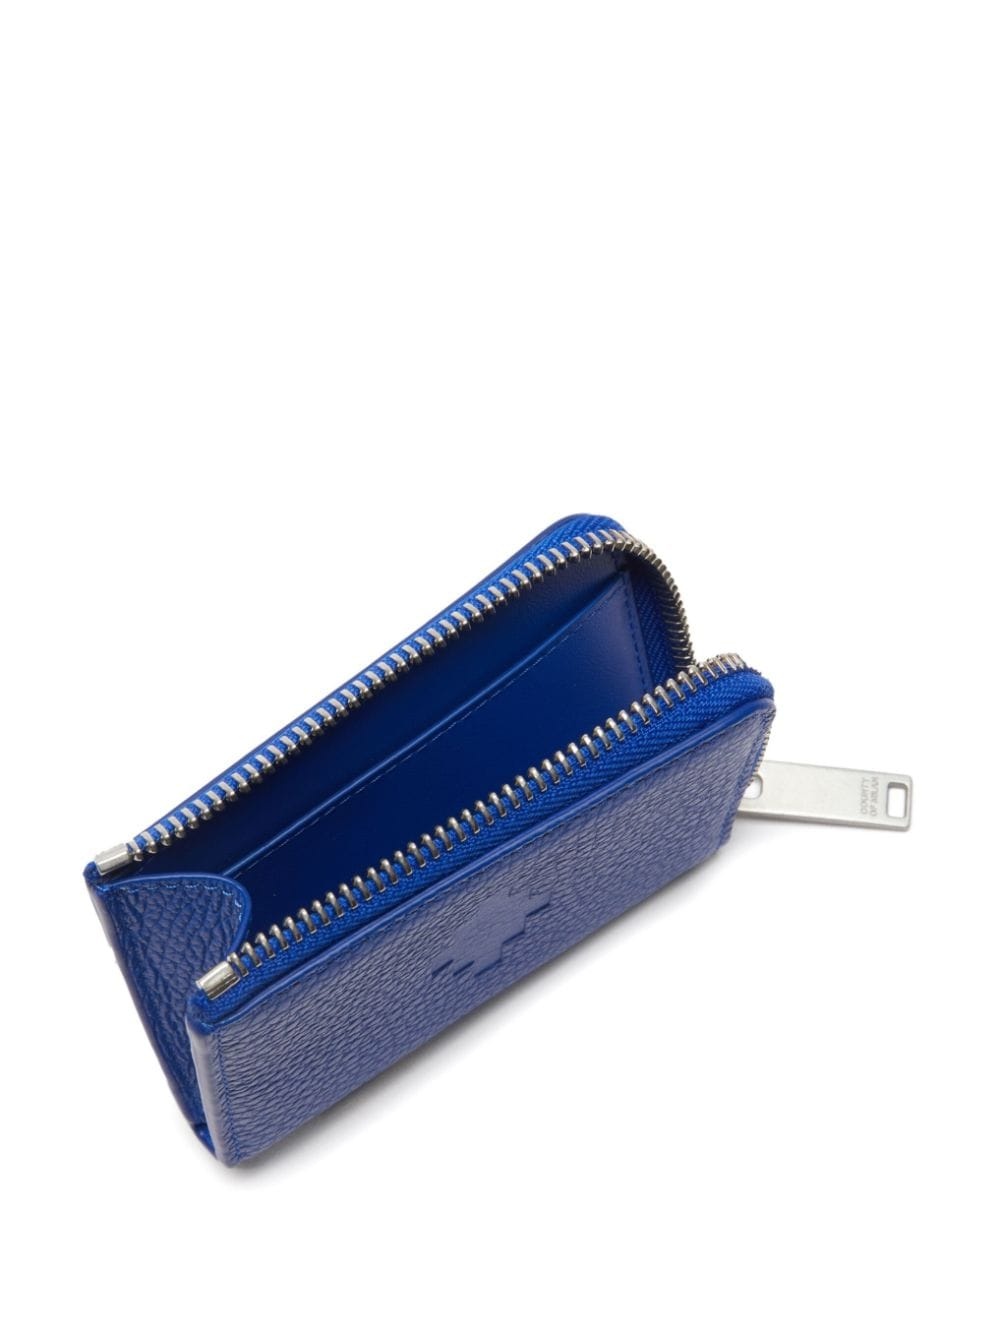 Cross leather wallet - 3